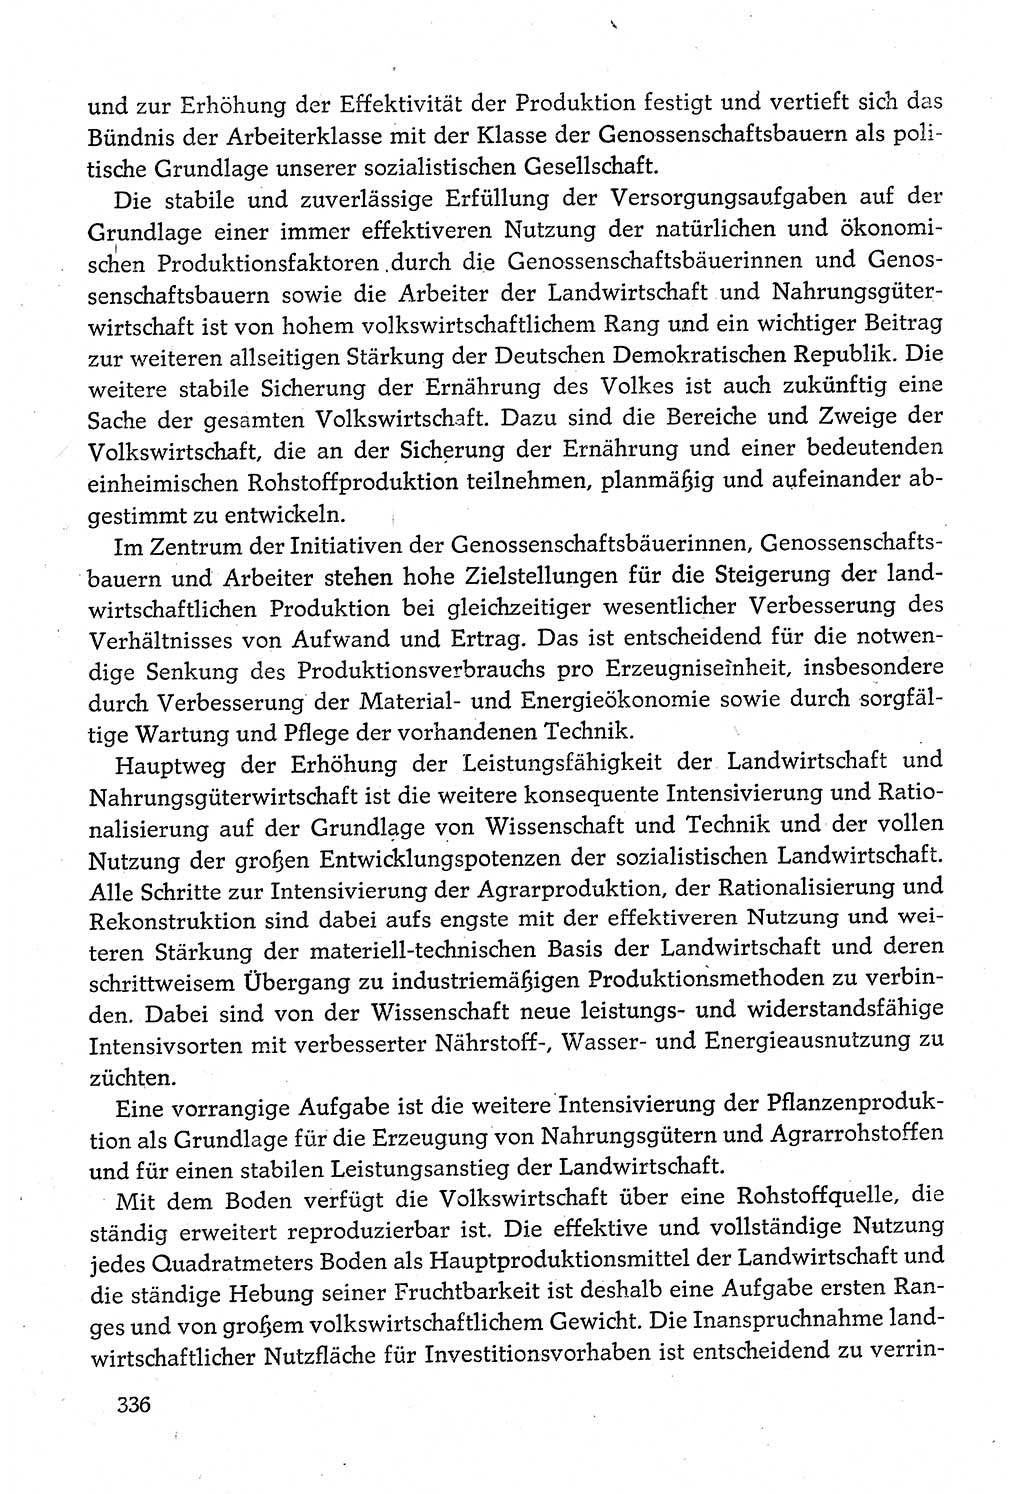 Dokumente der Sozialistischen Einheitspartei Deutschlands (SED) [Deutsche Demokratische Republik (DDR)] 1980-1981, Seite 336 (Dok. SED DDR 1980-1981, S. 336)